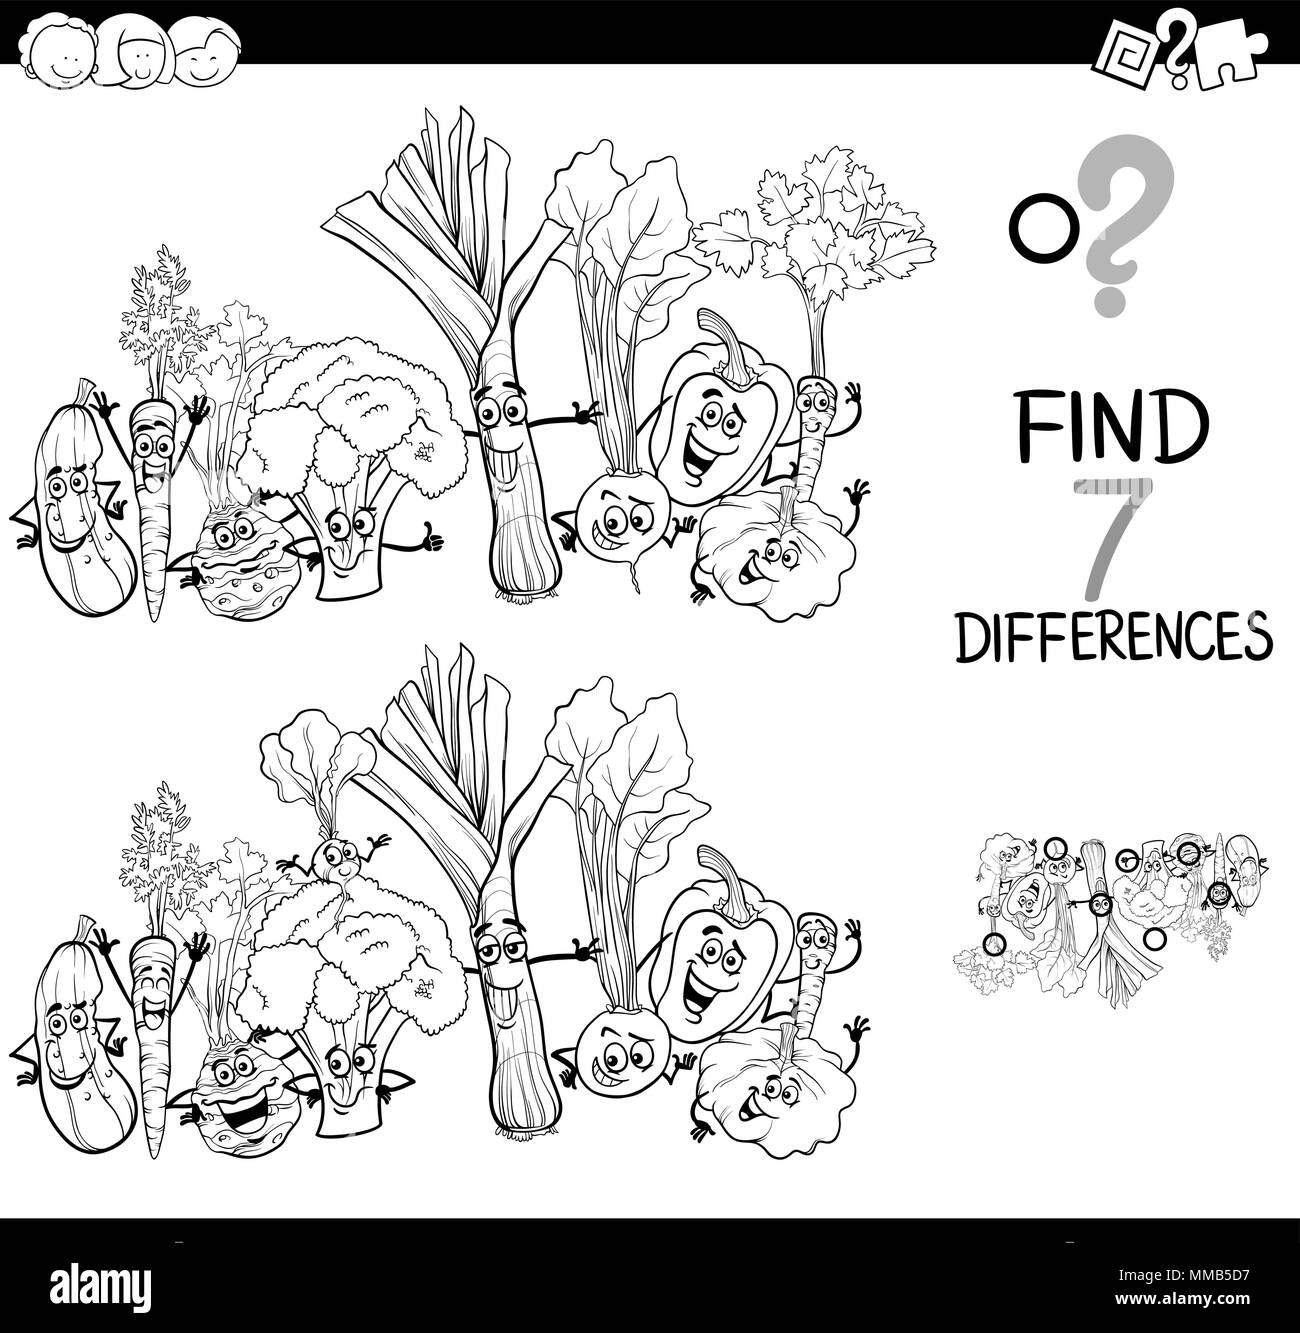 Bianco e Nero Cartoon illustrazione di trovare 7 differenze tra le immagini delle attività educative gioco per bambini con verdure cibo caratteri Illustrazione Vettoriale